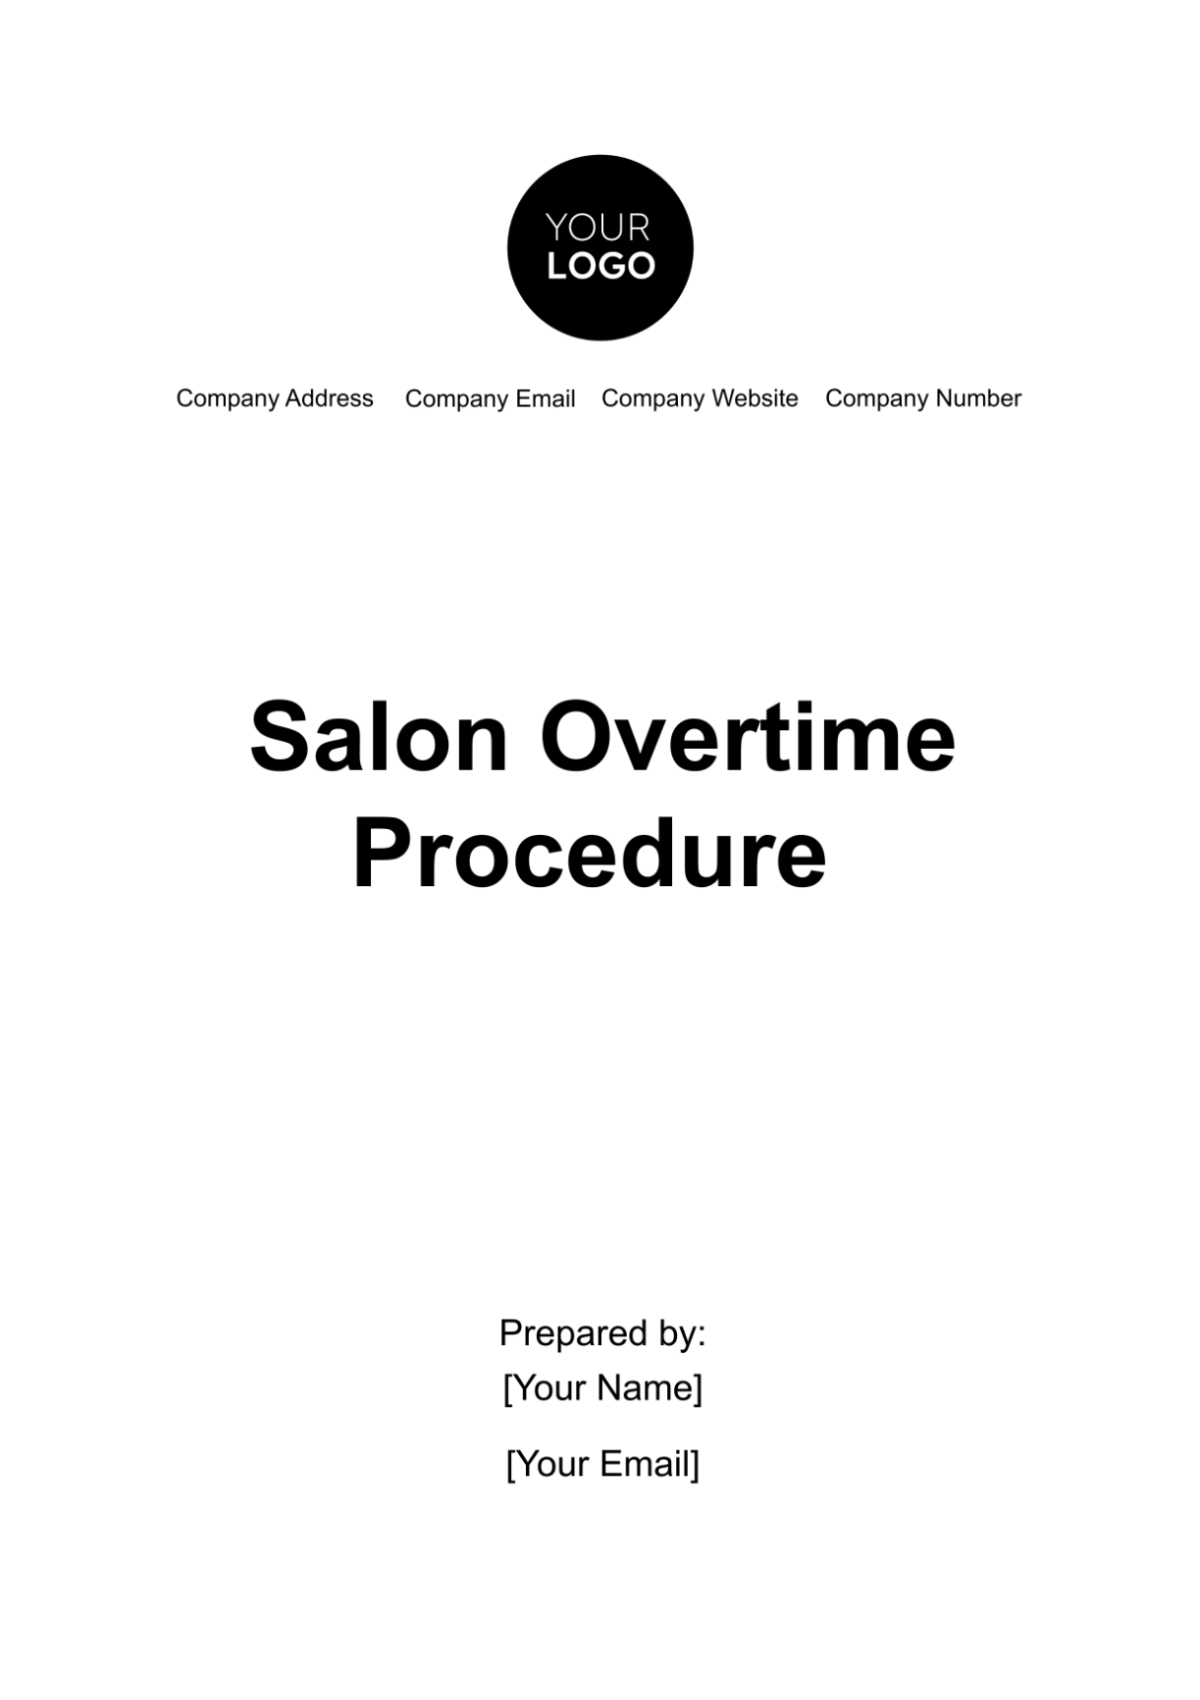 Free Salon Overtime Procedure Template